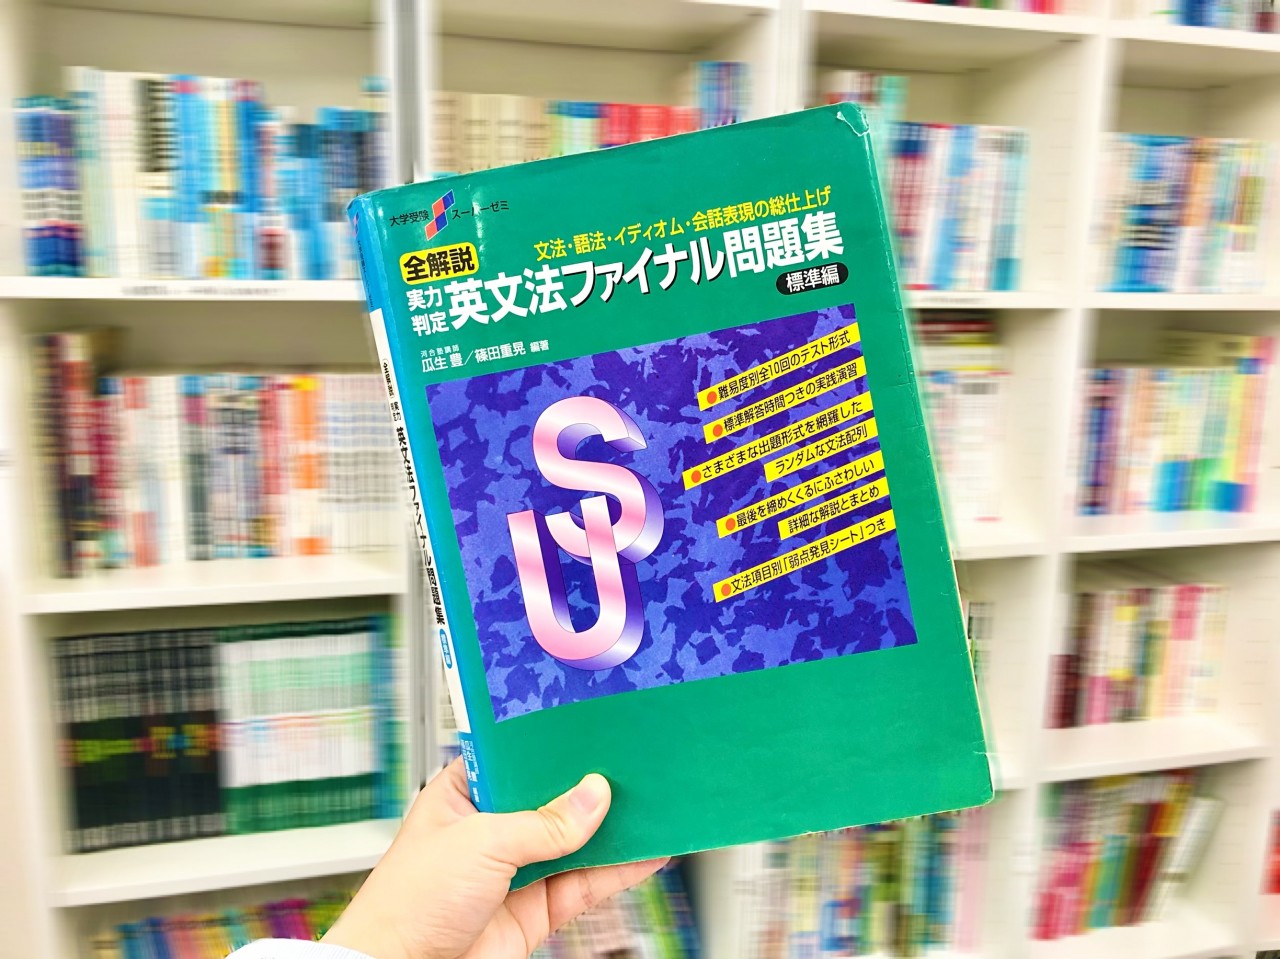 必殺参考書 Vol 6 英文法ファイナル の学習手順